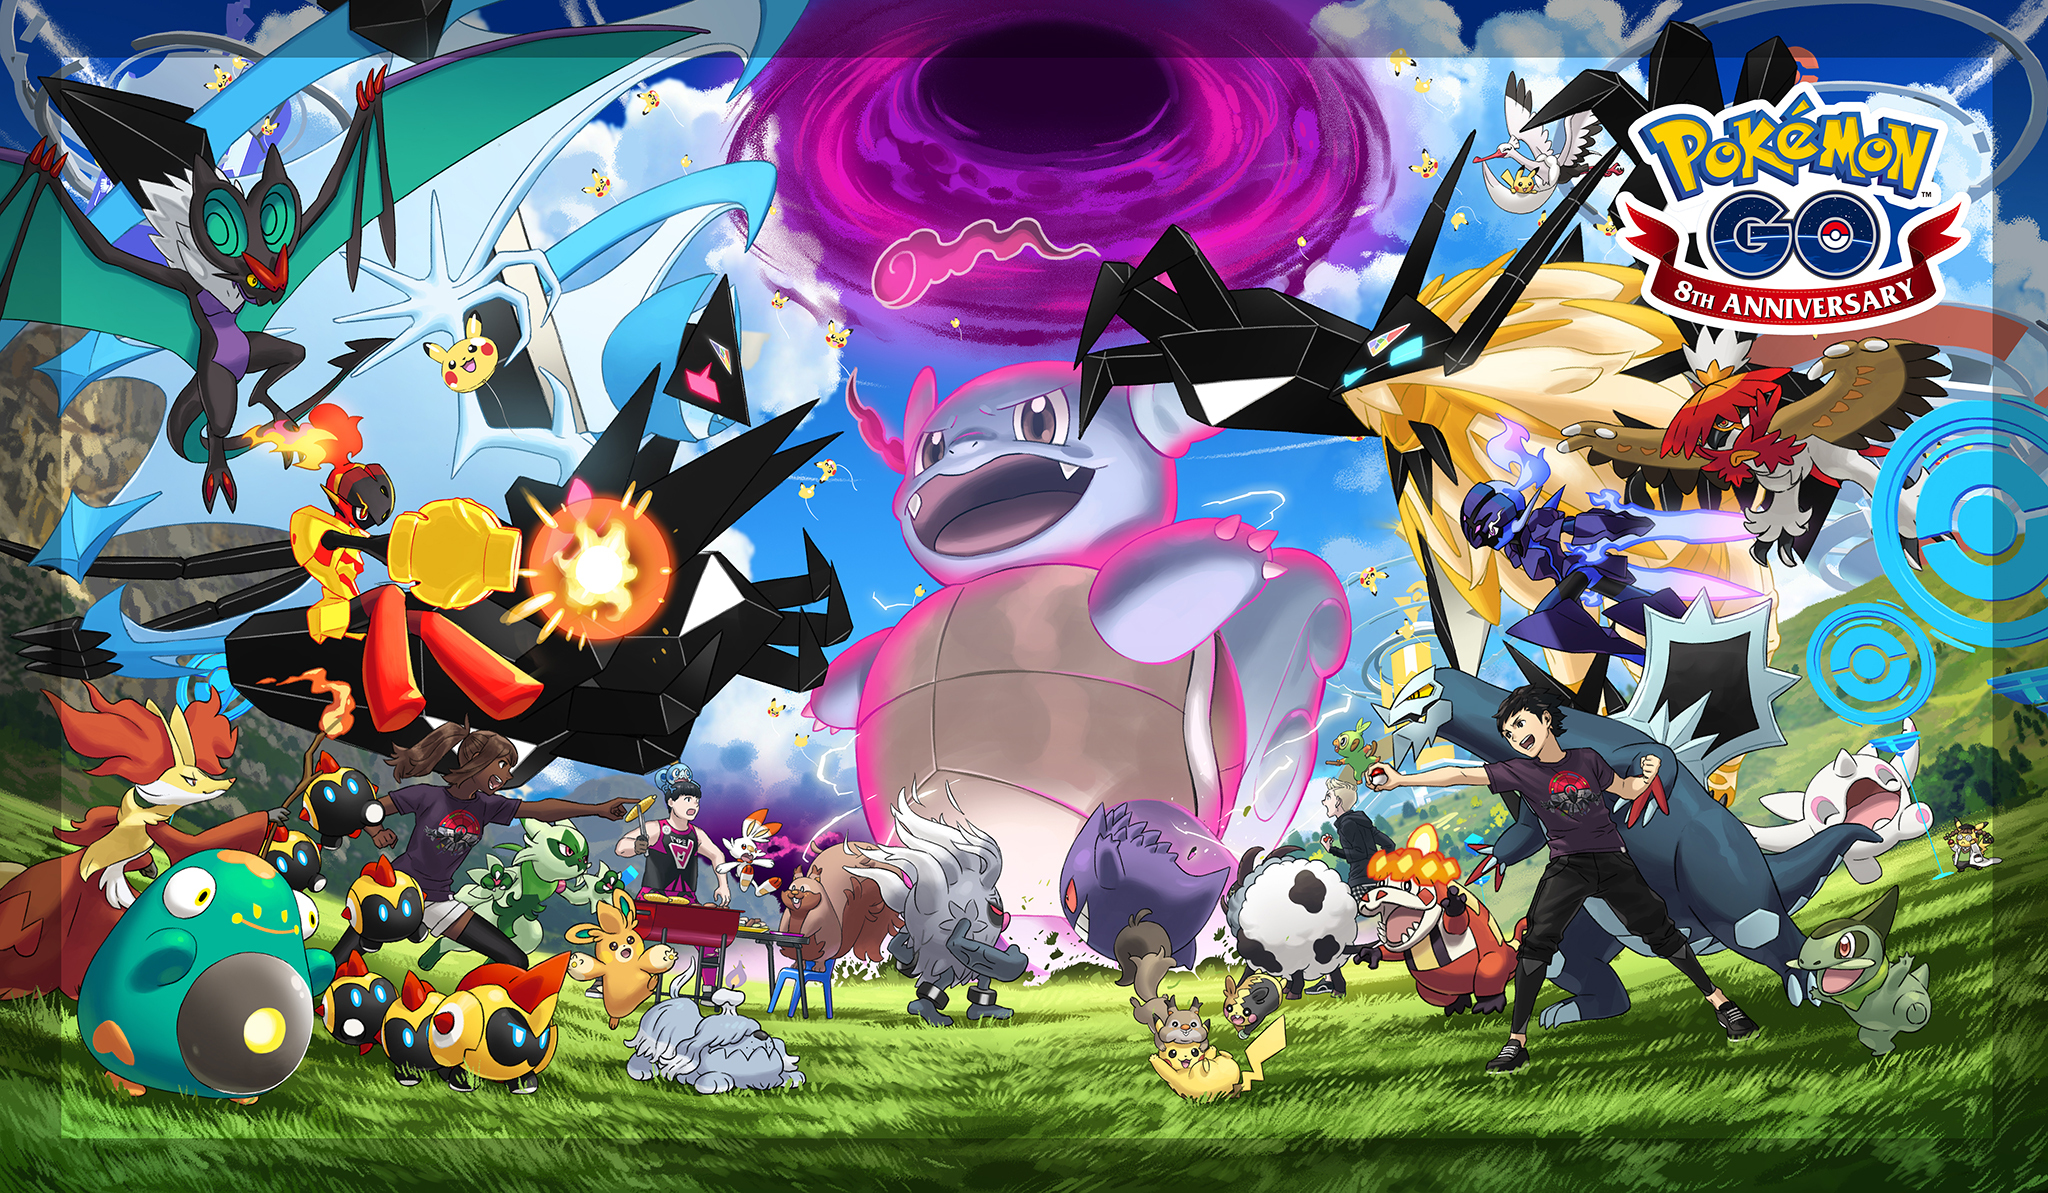 Pokémon Go 8th Anniversary afbeelding, toont verschillende pokemon en personages. Het opvallendste is een dynamax wartortle